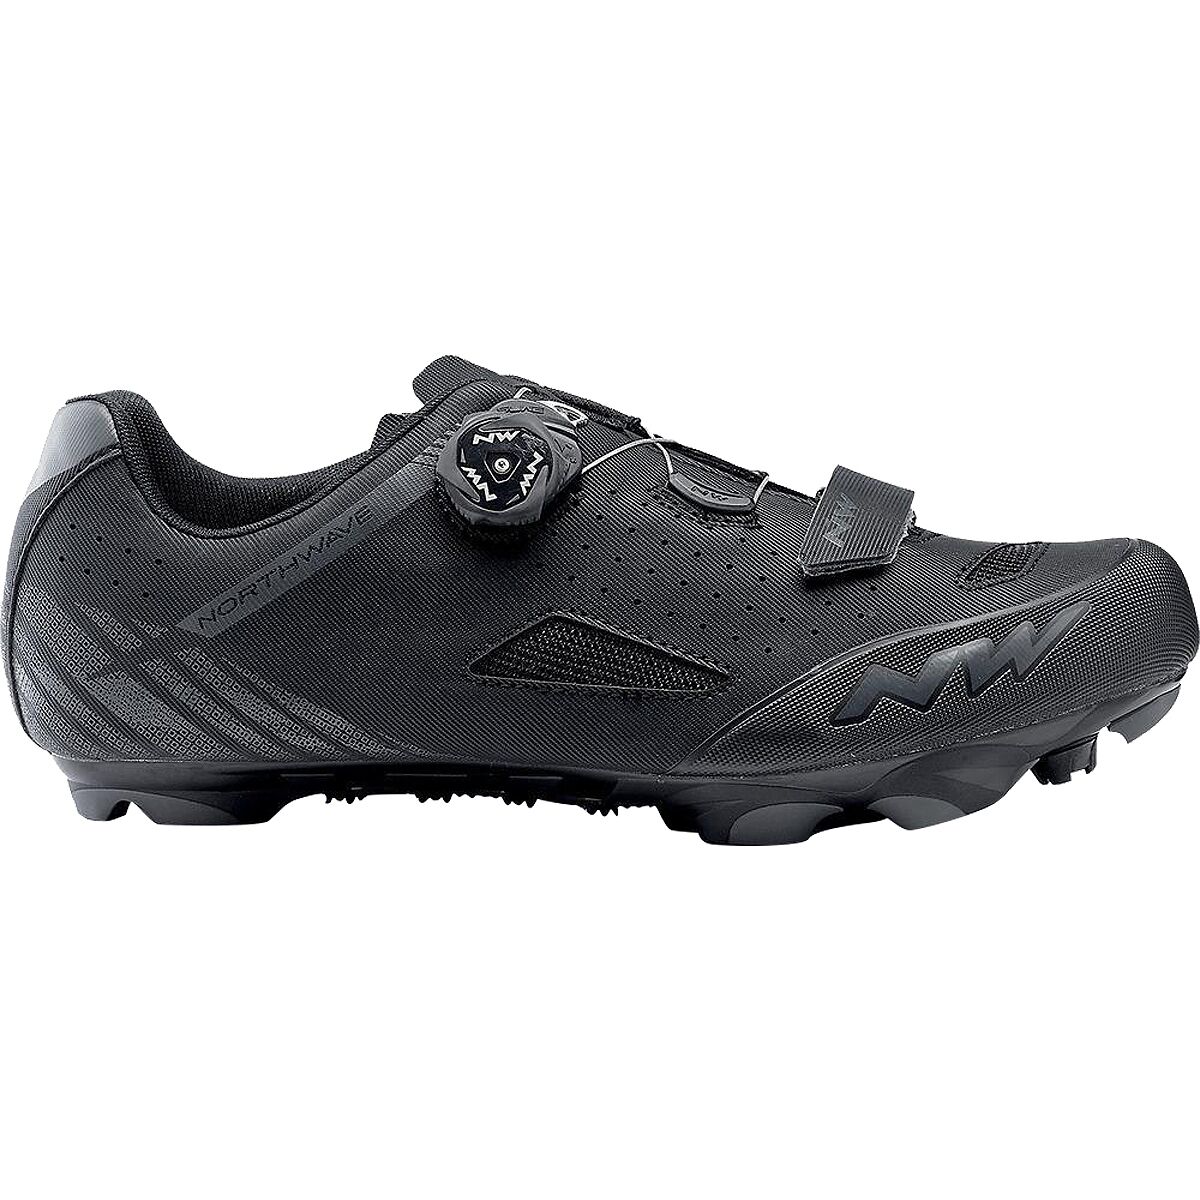 Northwave Genetix Plus 2 Mountain Bike Shoe - Men's Black/Anthra, 40.0